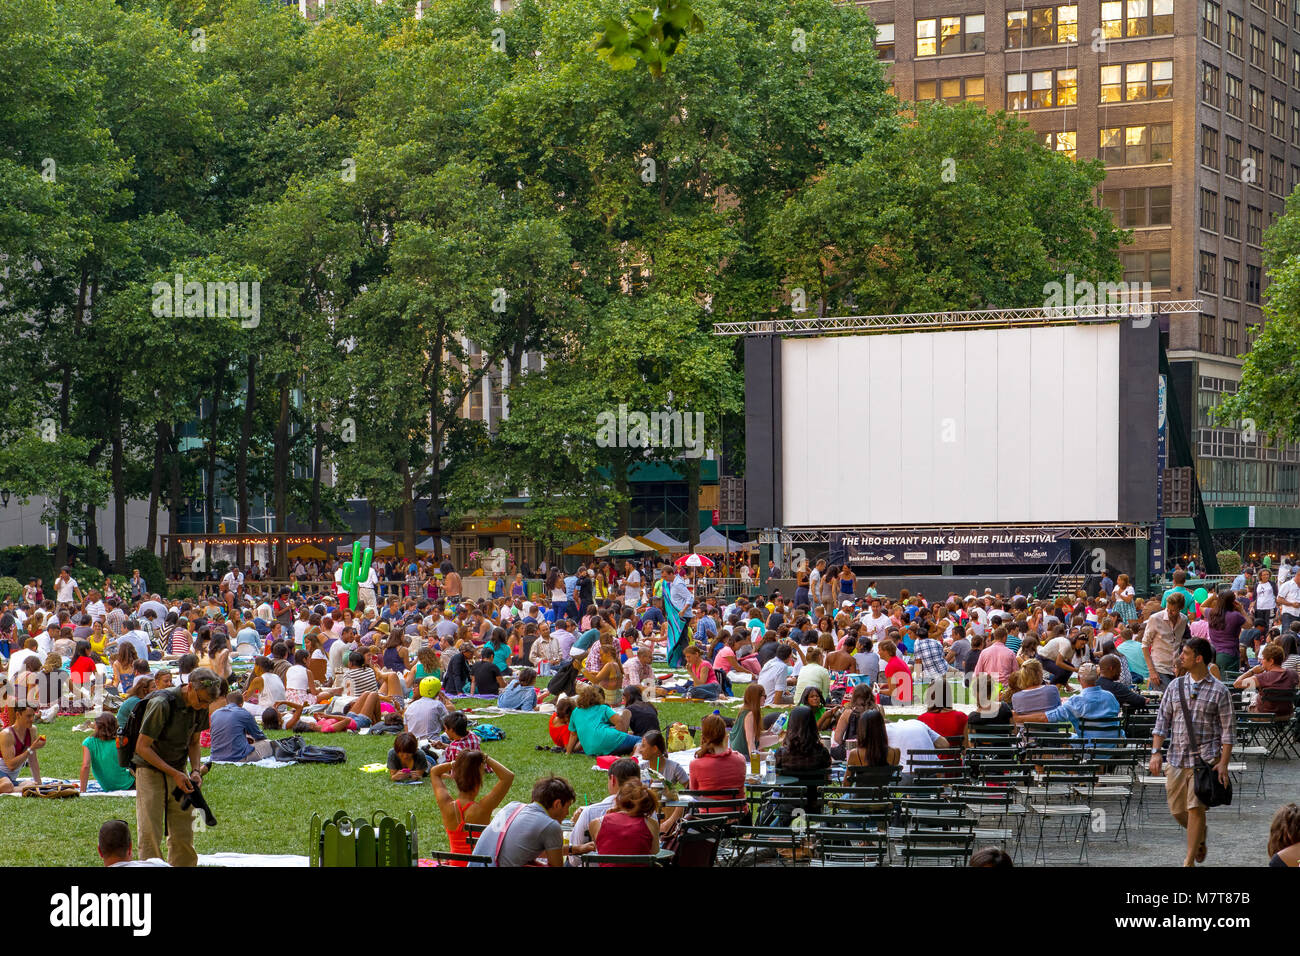 Auf dem Rasen des Bryant Park, Manhattan, versammelten sich Menschenmassen zum Bryant Park Film Festival im Freien, einer Filmvorführung im Freien in New York City Stockfoto